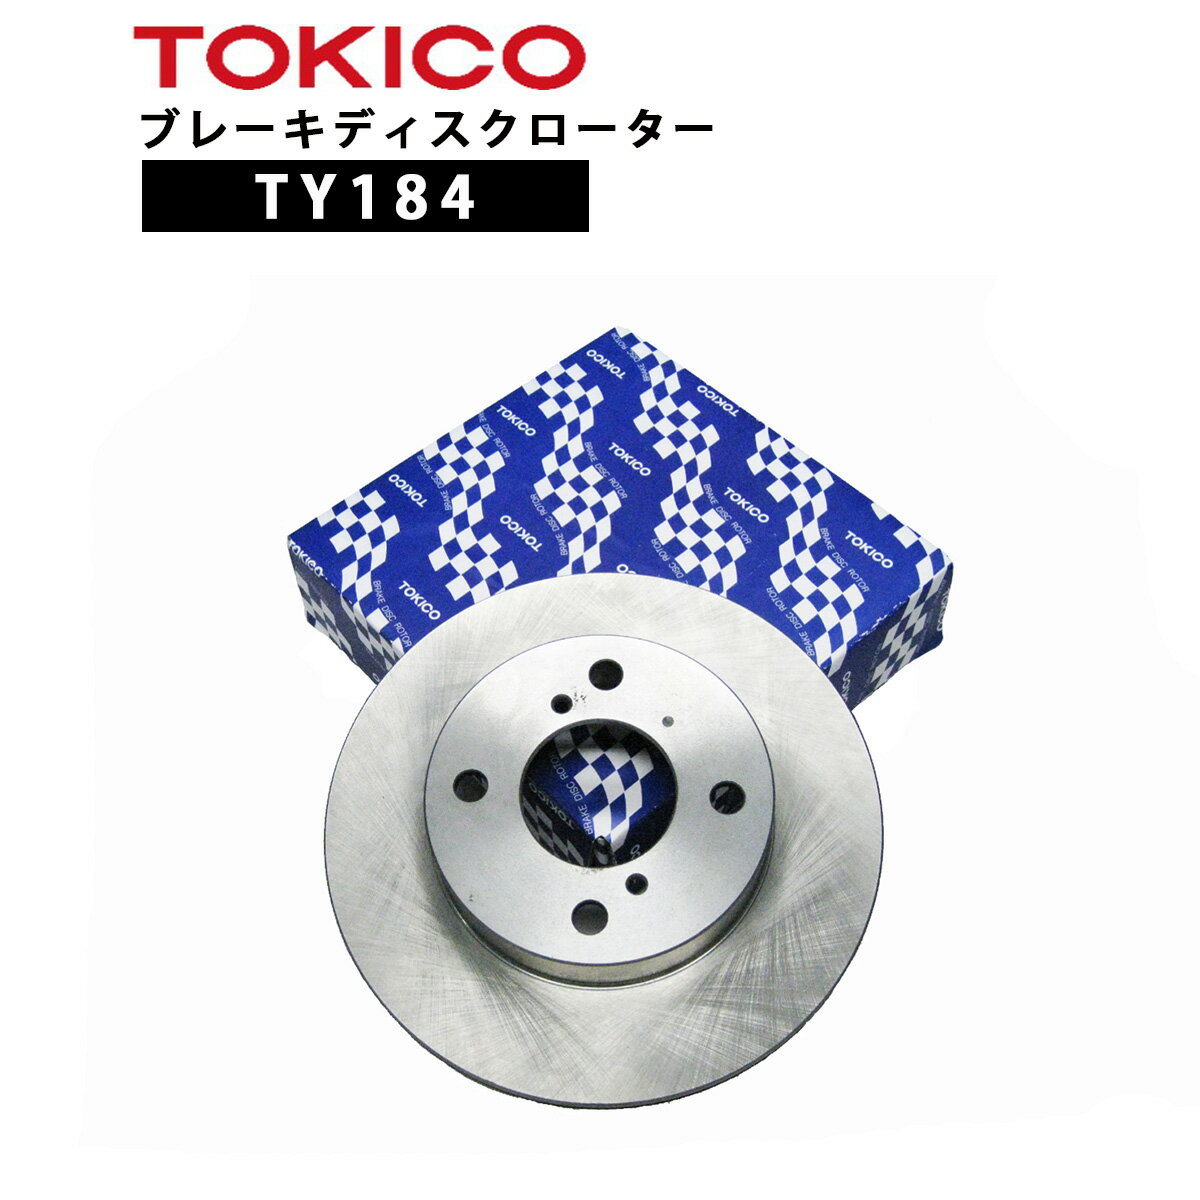 TOKICO（トキコ） ブレーキディスクローター　フロント用こちらは1枚（片側）の販売ページです。 【純正品番】日産 40206-9Y000 【他社互換品番】 ボッシュ品番：BD6385、テクノパワー品番：RN118、カシヤマ品番：E1009、パロート品番：V6-274B、ADVICS：- 【代表車種】スカイライン、ティアナ（V35,J31,TNJ31） 新品厚さ（mm）：24.0 限界厚さ（mm）：22.0 使用厚さ（mm）：2.0 外径Φ　（mm）：296.0 ※メーカー欠品の場合は、メールにてご連絡させていただきます。 ※同じ型式でも適合品が異なる場合がございますので、 　必ず純正品番・他社互換品番をご確認のうえ、ご購入ください。 ※商品不具合以外での返品・交換等は承っておりませんので、ご注意ください。 【TOKICO】 TOKICOは、日立Astemo(アステモ)株式会社の製品です。 日立グループが有する自社施設で、実車での検証を繰り返すなど、長年にわたる自動車機器の開発で培った技術が、広く生かされ、多くの自動車機器技術のさまざまな可能性を追求し、より快適な社会の実現をめざした製品作りをされています。 関連商品TY242 TOKICO ブレーキディスクローター フロント　1枚 片...TY148 TOKICO ブレーキディスクローター フロント　1枚 片...10,890円10,809円TY104 TOKICO ブレーキディスクローター フロント 2枚 左...TY146 TOKICO ブレーキディスクローター フロント　1枚 片...10,929円10,750円TY212 TOKICO ブレーキディスクローター フロント　1枚 片...TY159 TOKICO ブレーキディスクローター フロント 2枚 左...10,927円10,968円TY205 TOKICO ブレーキディスクローター フロント 2枚 左...TY173 TOKICO ブレーキディスクローター フロント　1枚 片...10,921円10,694円TY262 TOKICO ブレーキディスクローター フロント 2枚 左...TY258 TOKICO ブレーキディスクローター フロント 2枚 左...10,968円10,983円